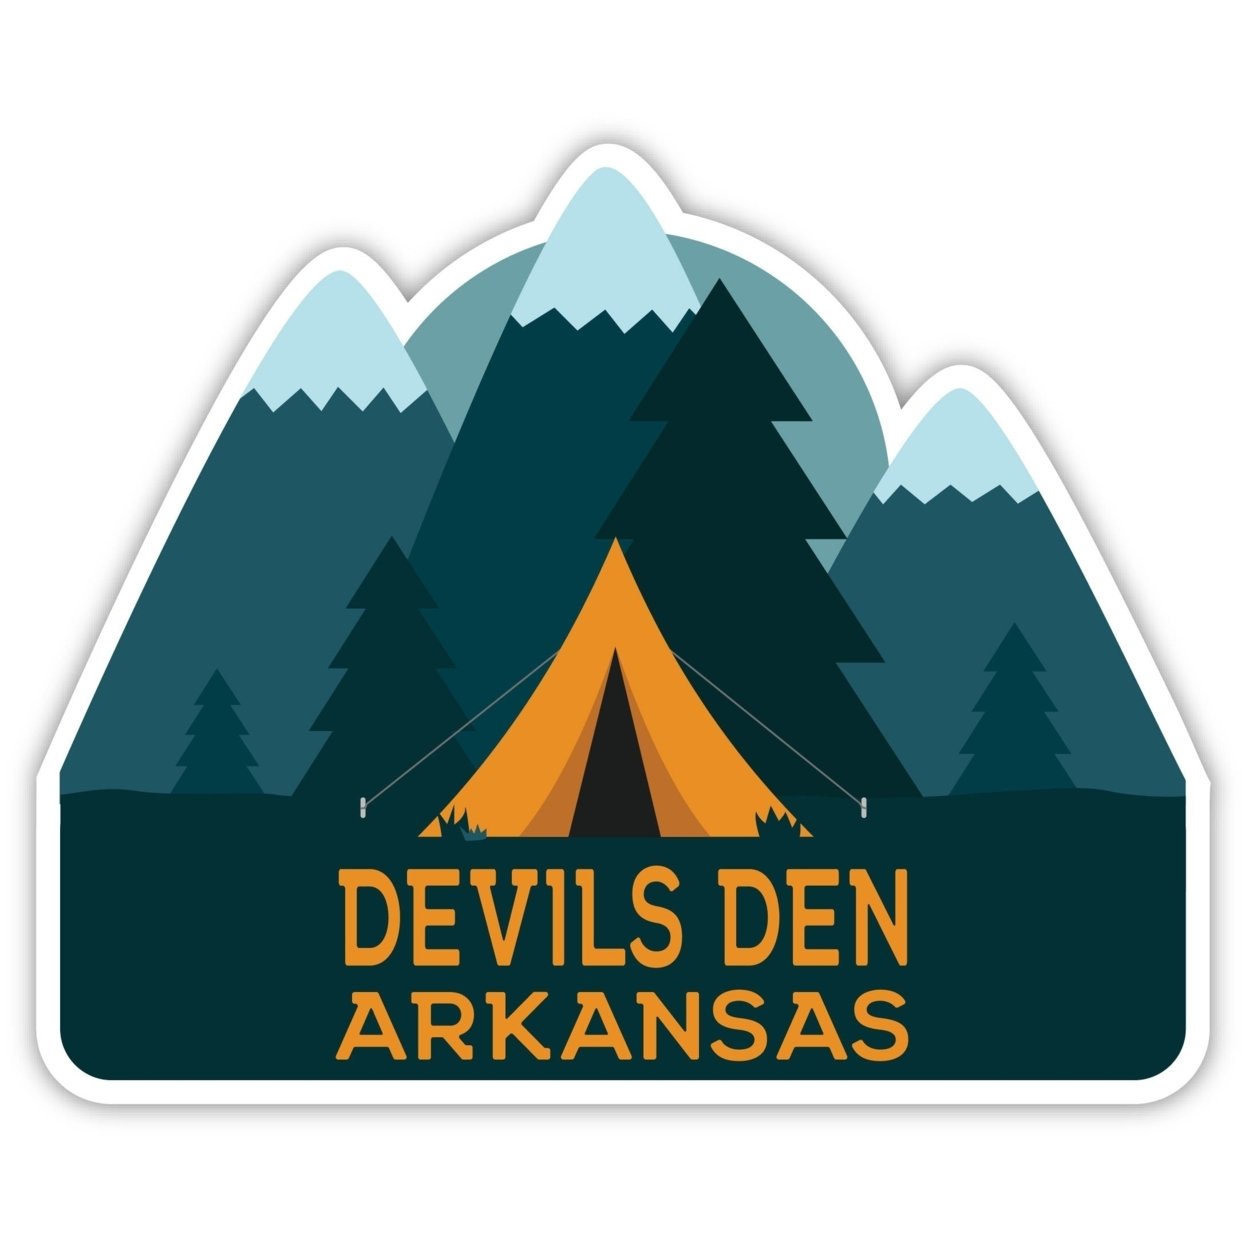 Devils Den Arkansas Souvenir Decorative Stickers (Choose Theme And Size) - Single Unit, 6-Inch, Tent